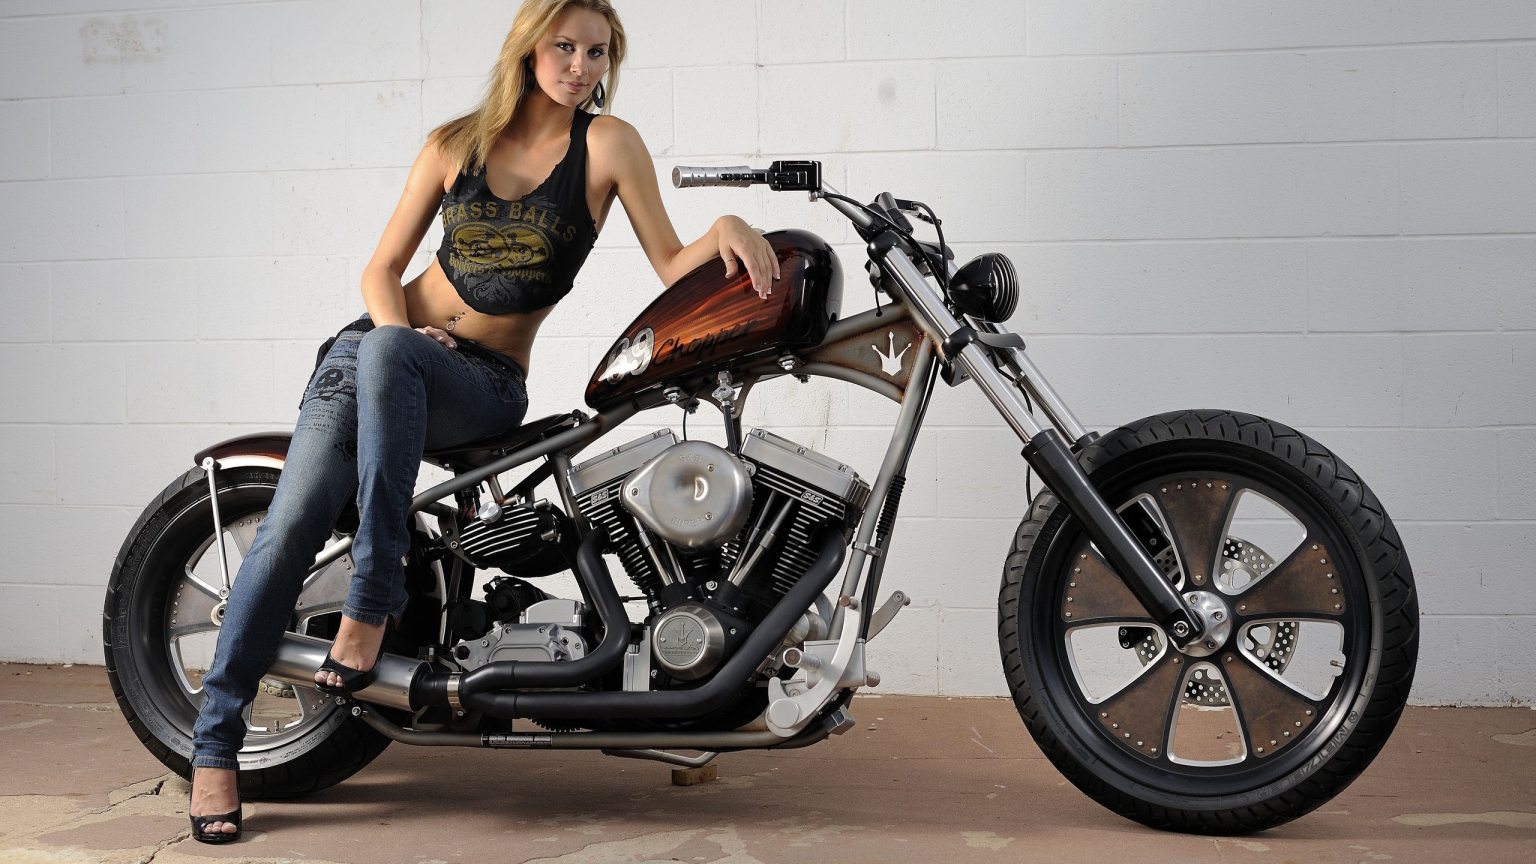 Harley Davidson Classic Bobber for 1536 x 864 HDTV resolution